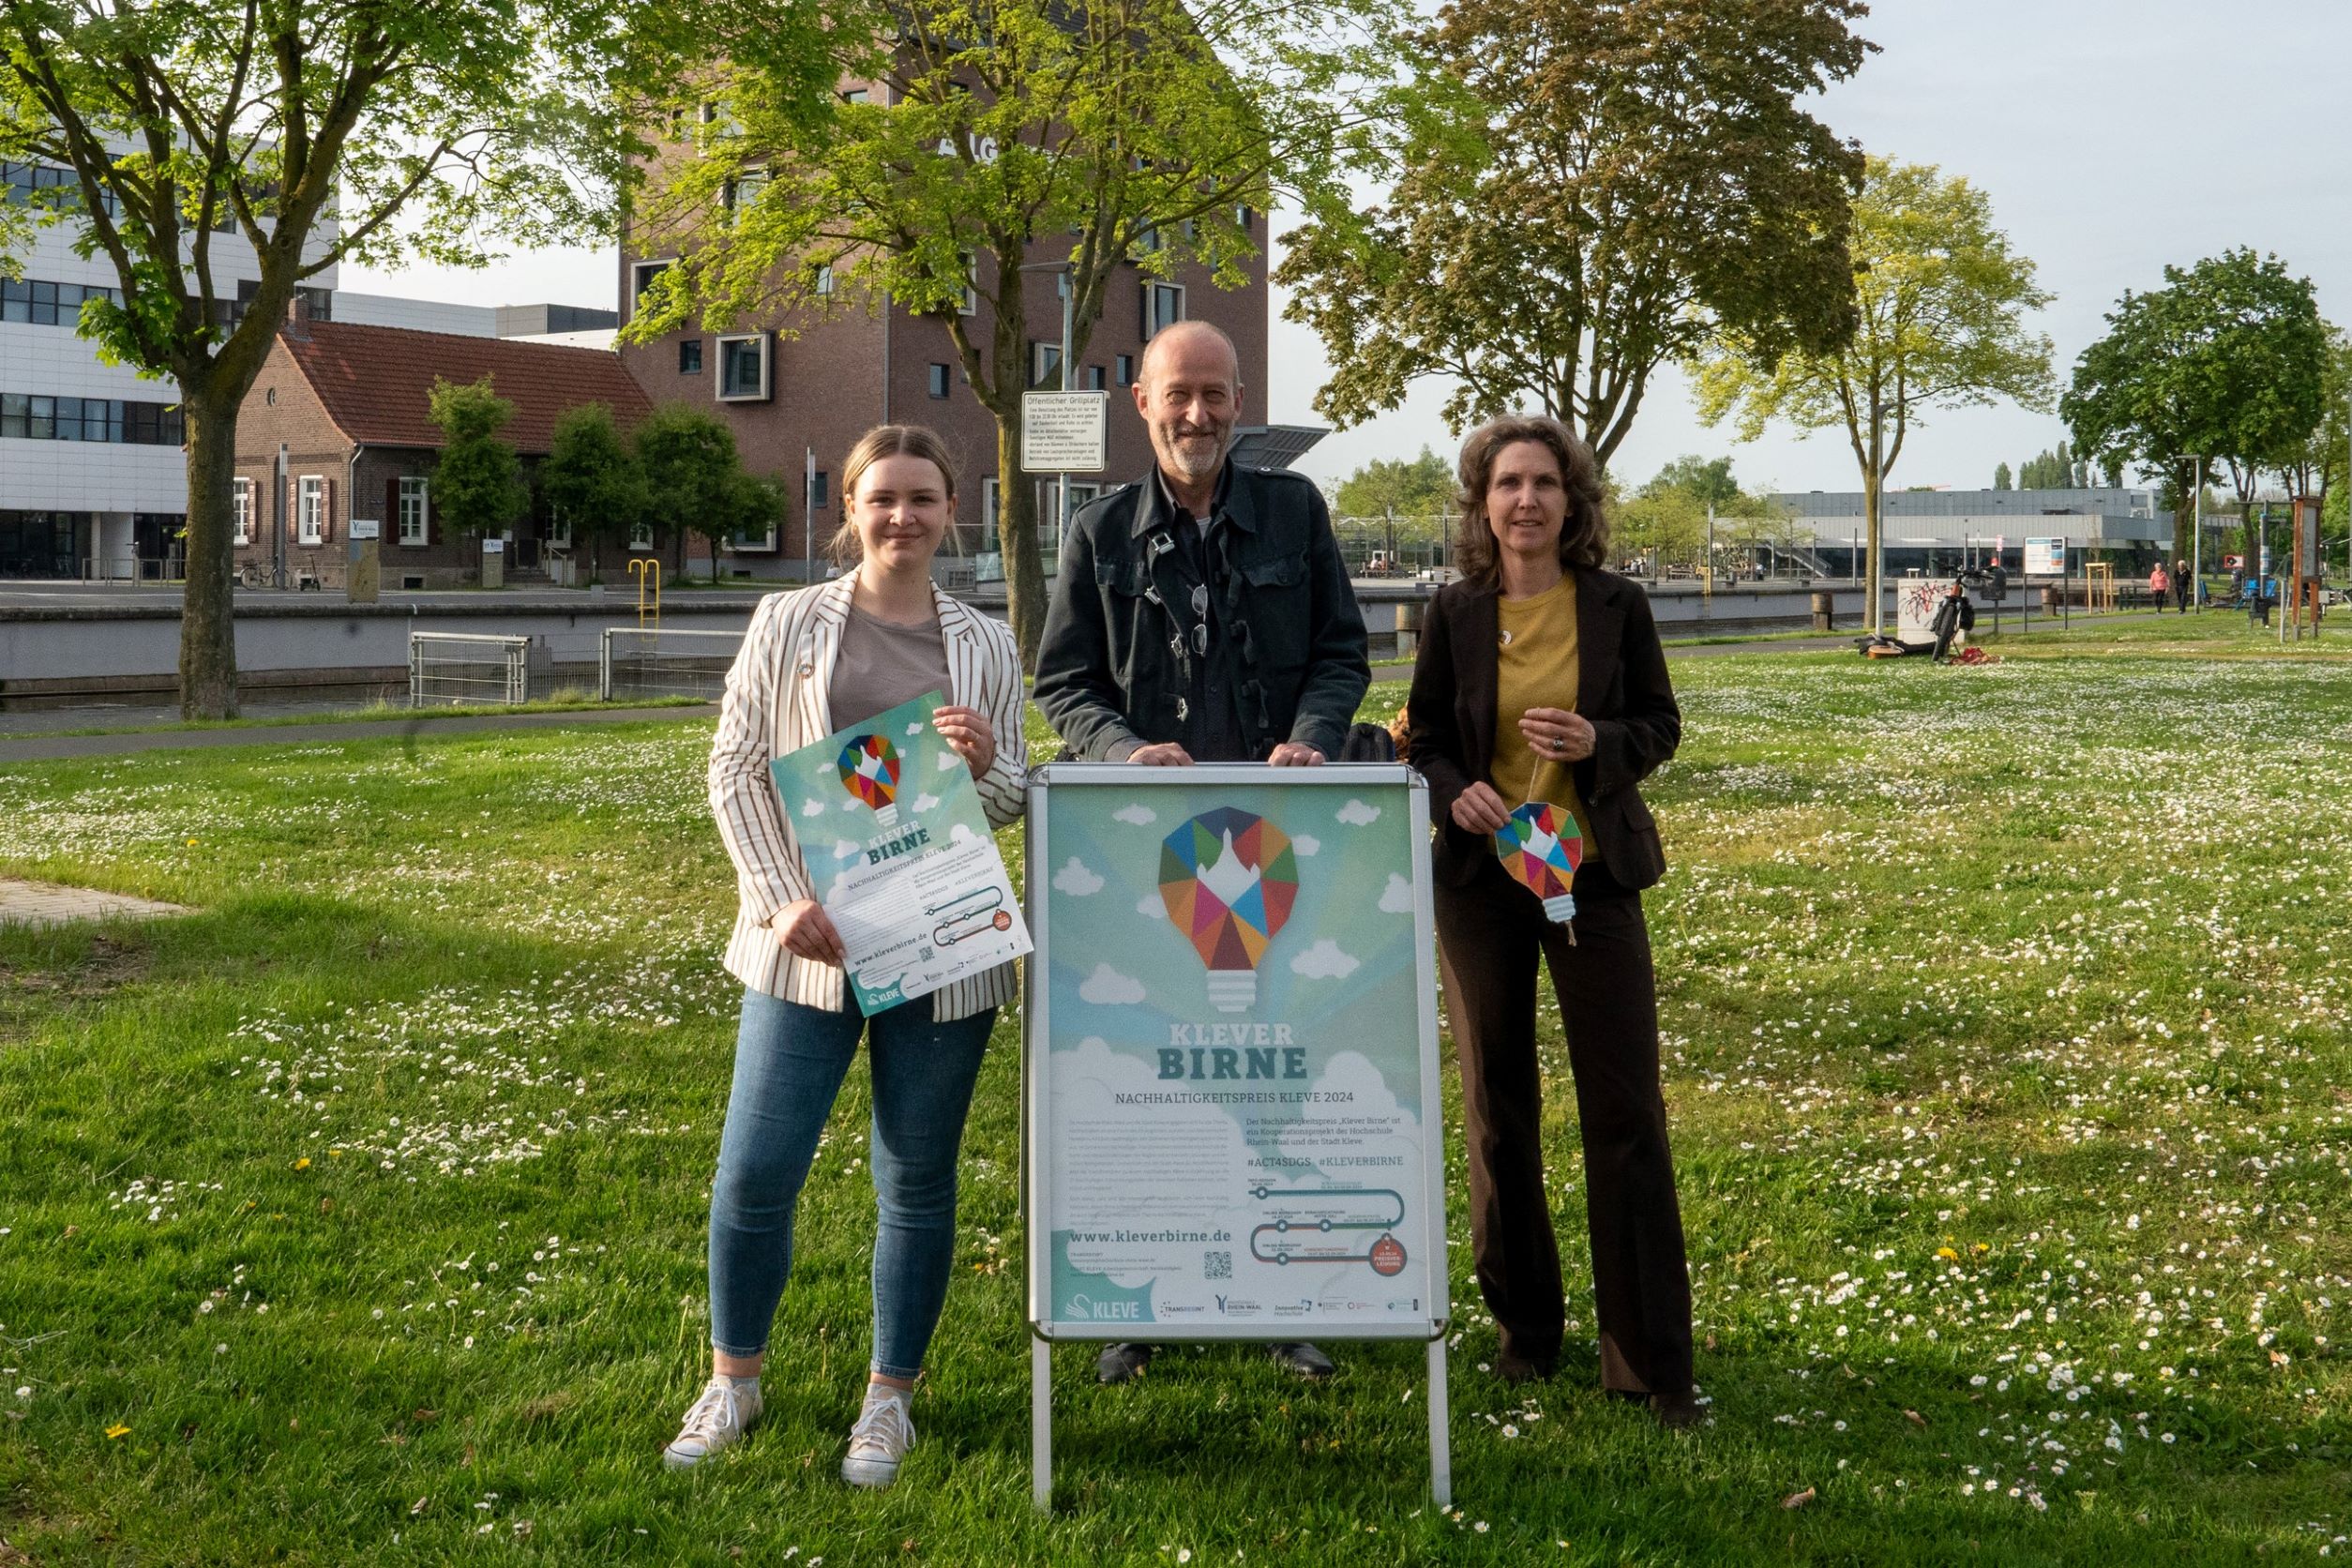 Das Team der ‚Klever Birne‘ steht auf einer grünen Wiese und freut sich schon jetzt auf clevere Ideen für den Nachhaltigkeitswettbewerb. Vor den zwei Frauen und einem Mann steht ein A1-Aufsteller mit den 'Klever Birne' Logo. Im Hintergrund sind der Spoykanal und die Bibliothek der Hochschule Rhein-Waal zu sehen.